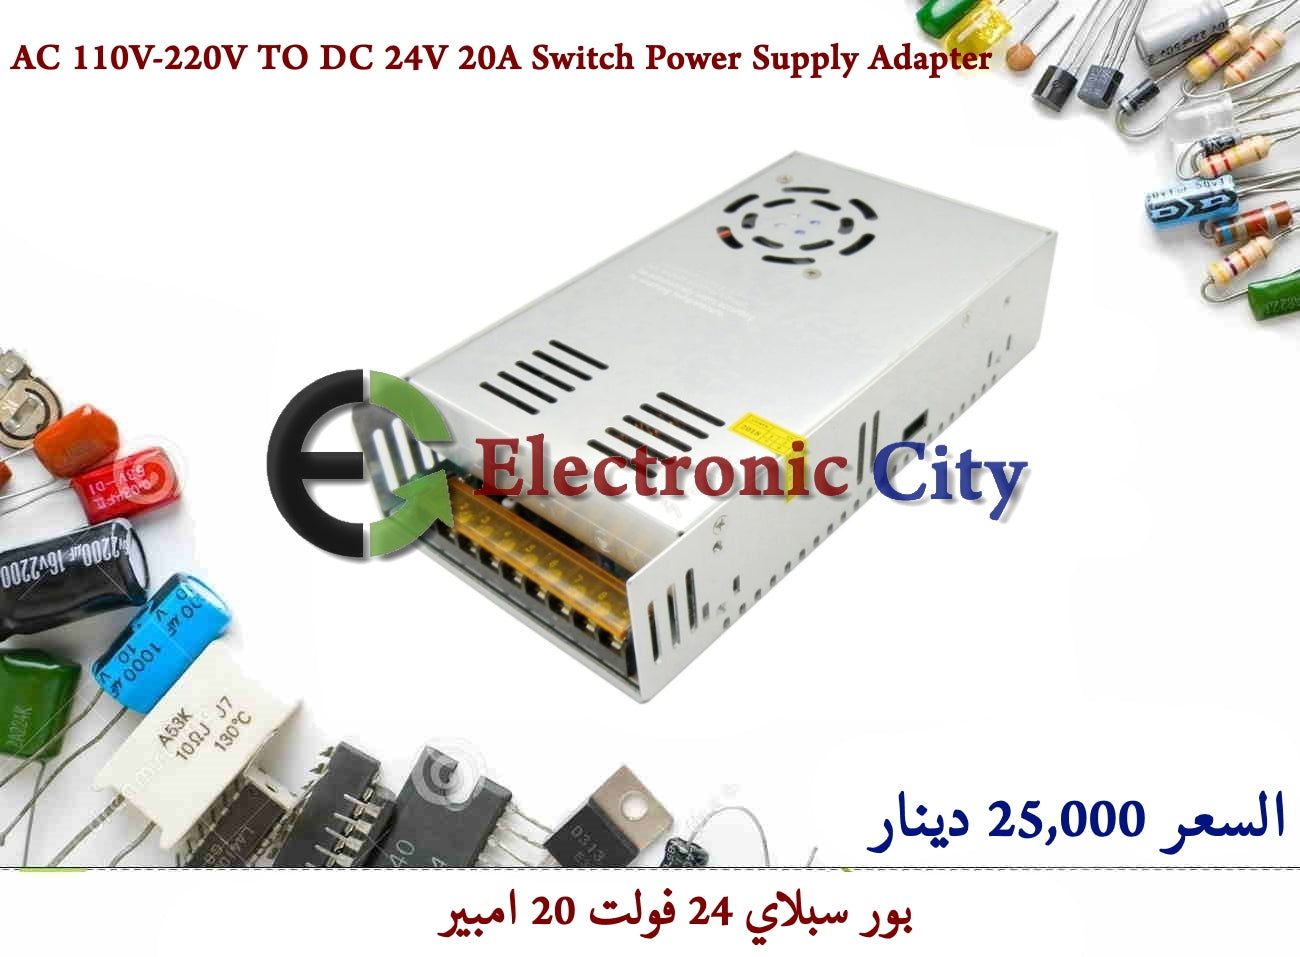 AC 110V-220V TO DC 24V 20A Switch Power Supply Adapter